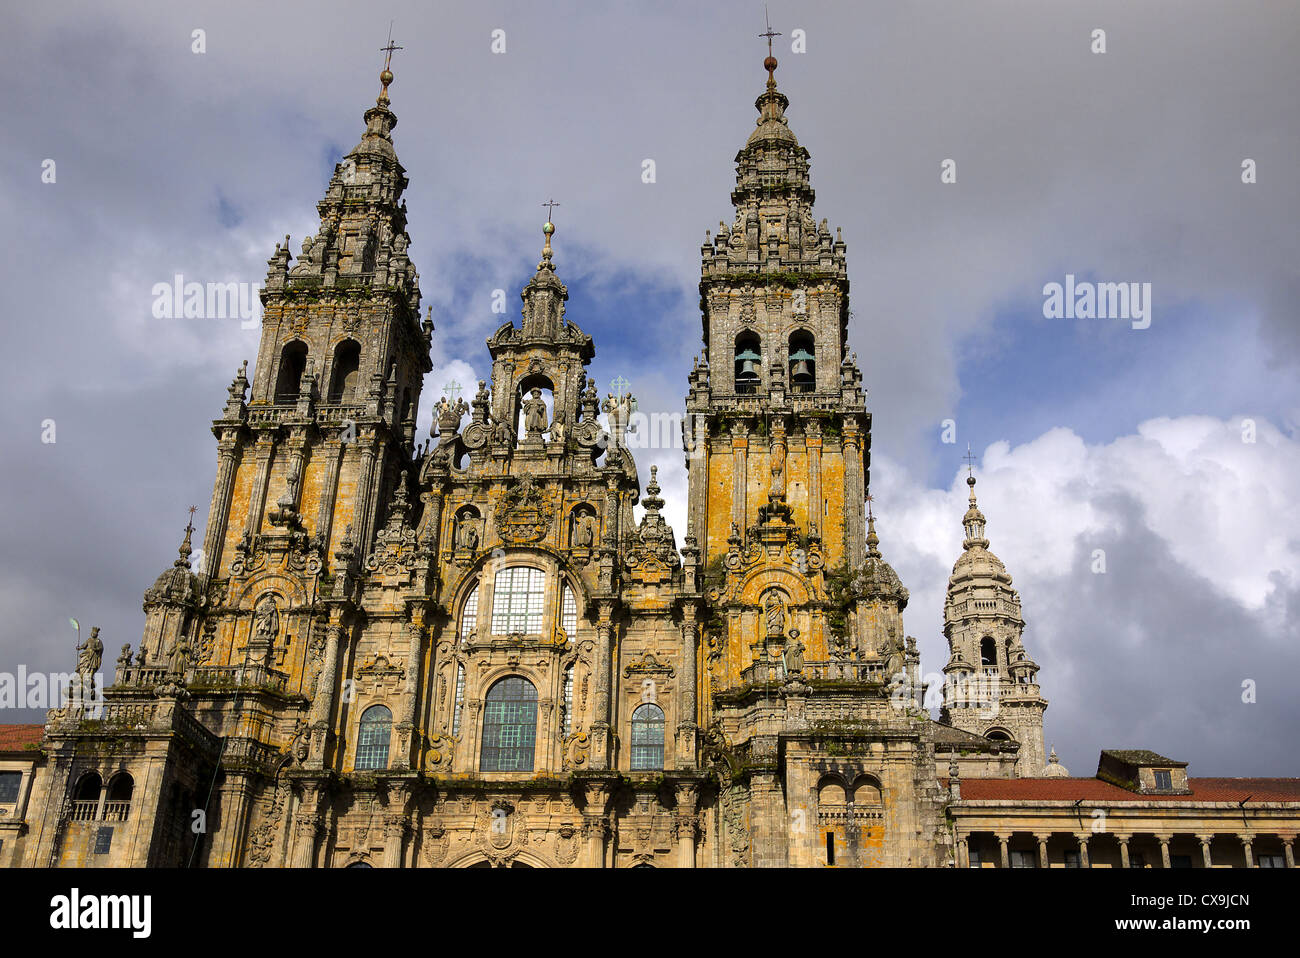 Santiago de Compostela, Spain. The Cathedral of Saint James. Stock Photo